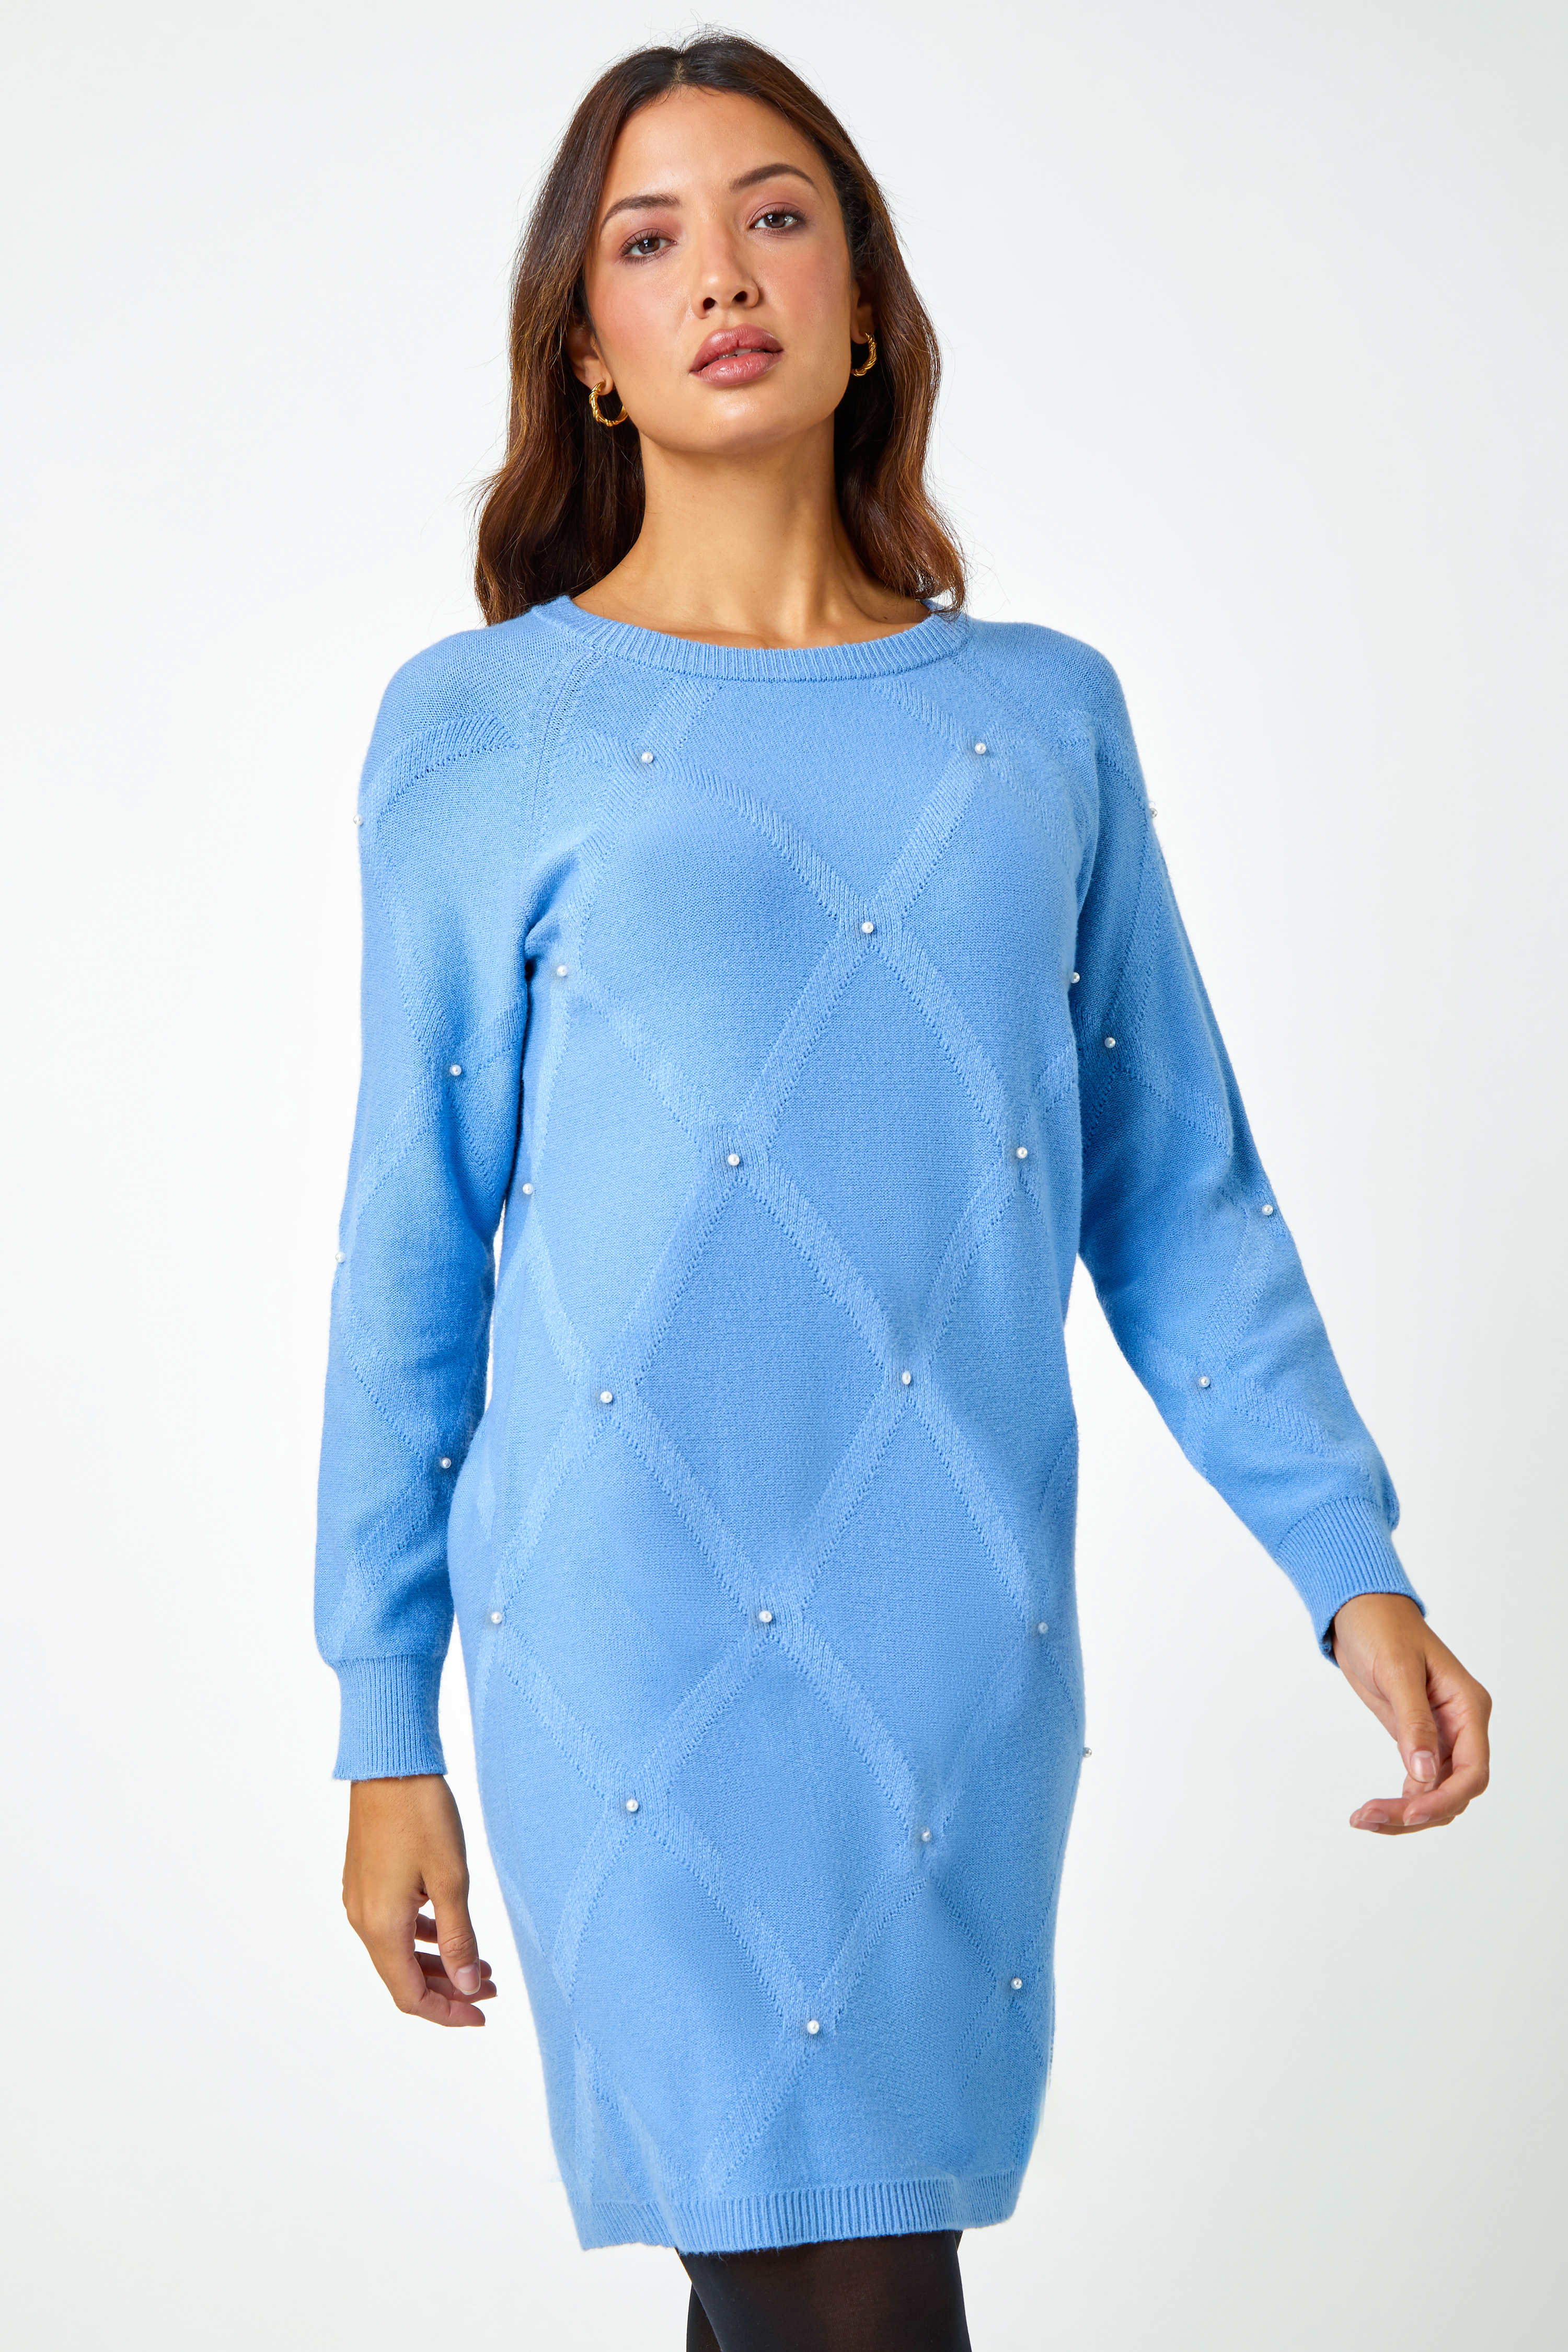 Light Blue  Pearl Embellished Jumper Dress, Image 3 of 5